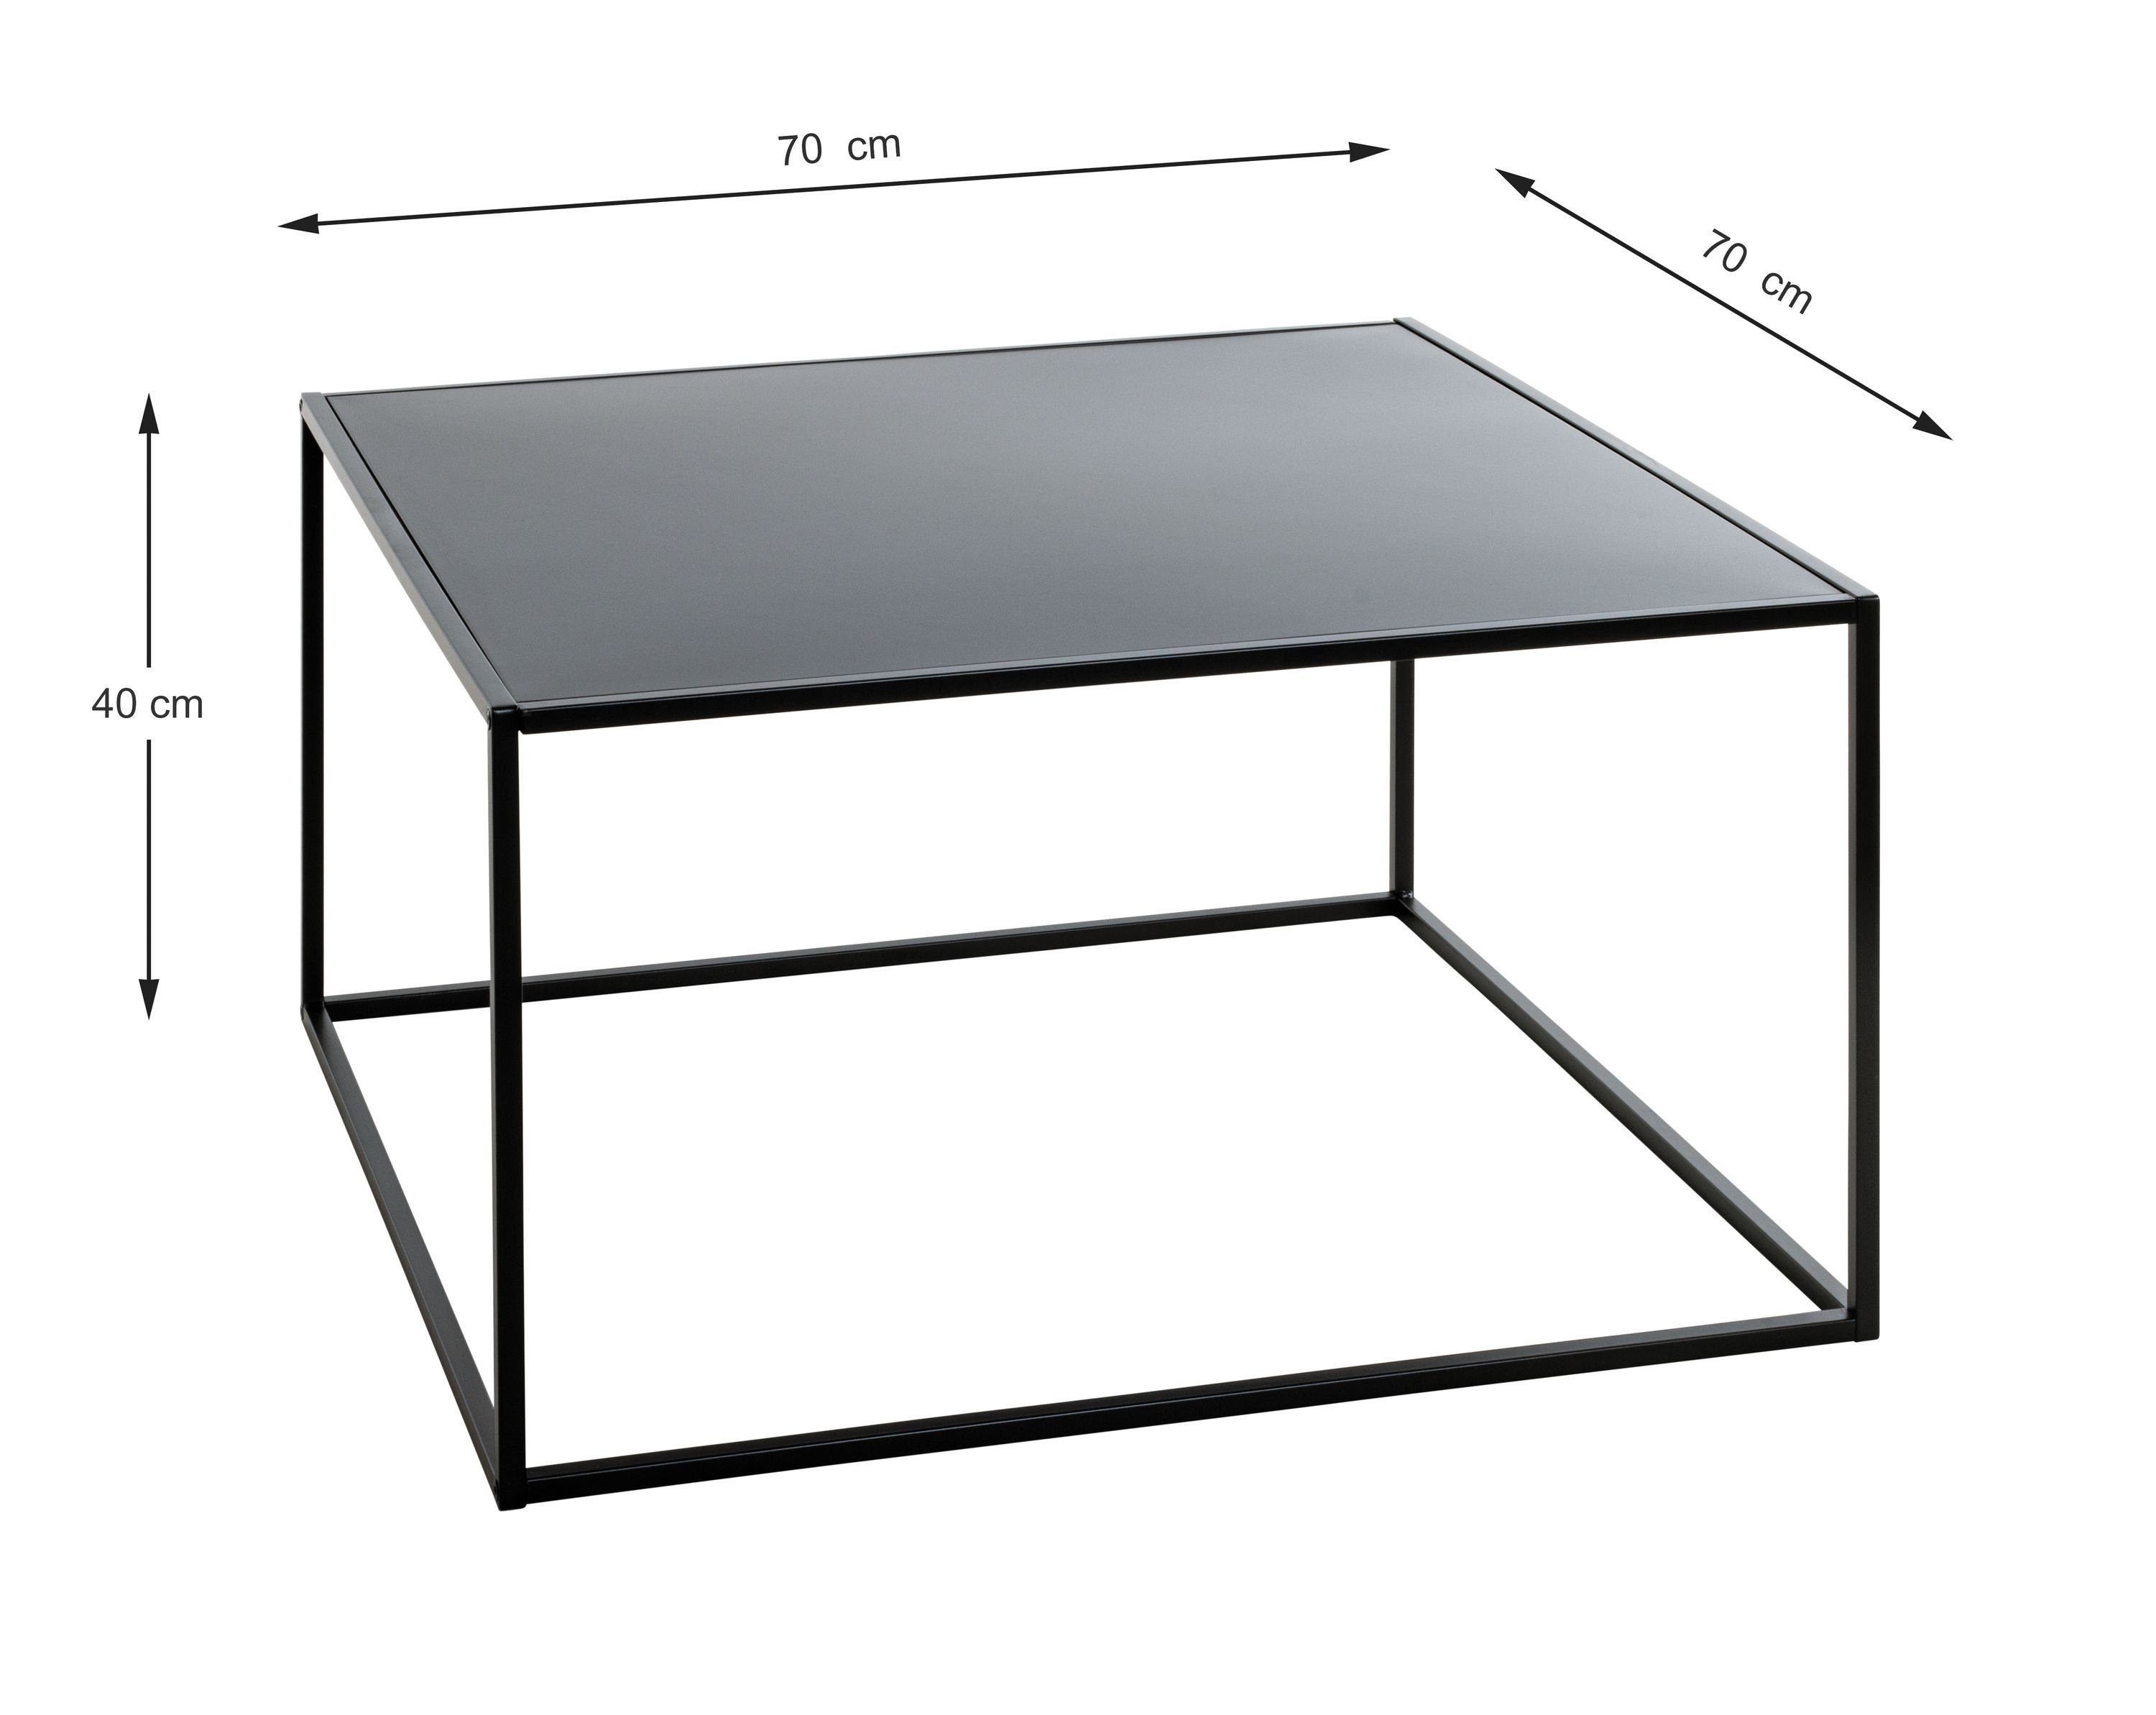 schwarz Beistelltisch Beistelltisch Möbel BHT Beistelltisch, (BHT cm) 70x40x70 cm HAKU HAKU 70x40x70